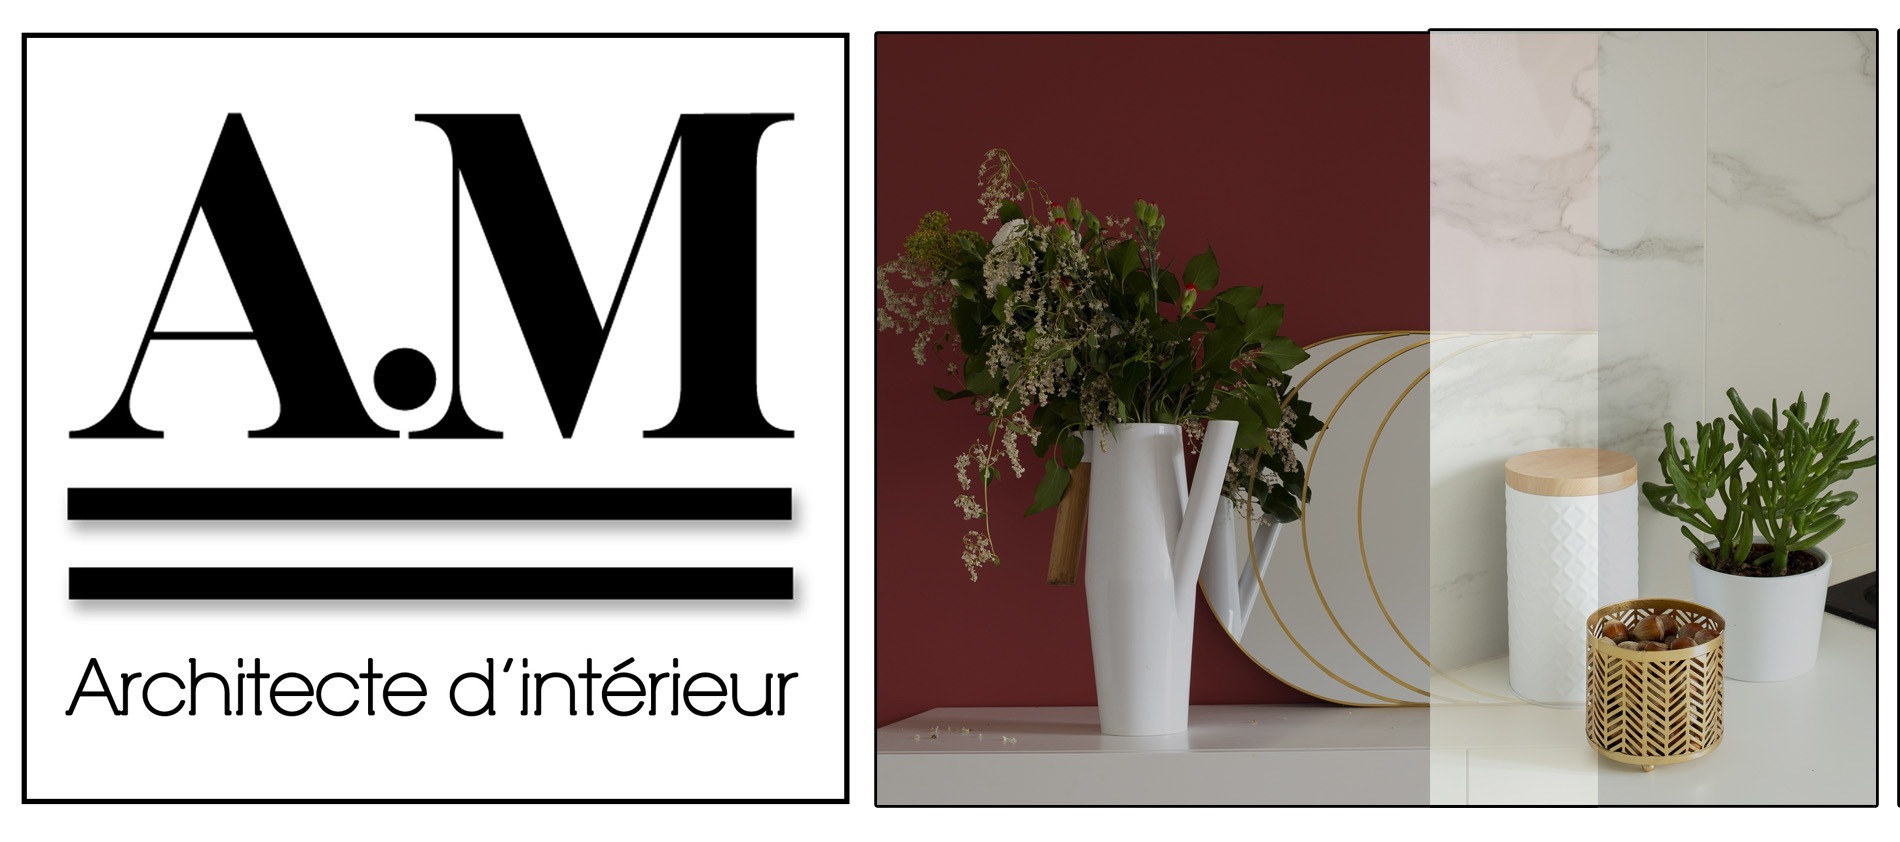 Marion-Avogadro-logo-décoration-accueil-mobiliers